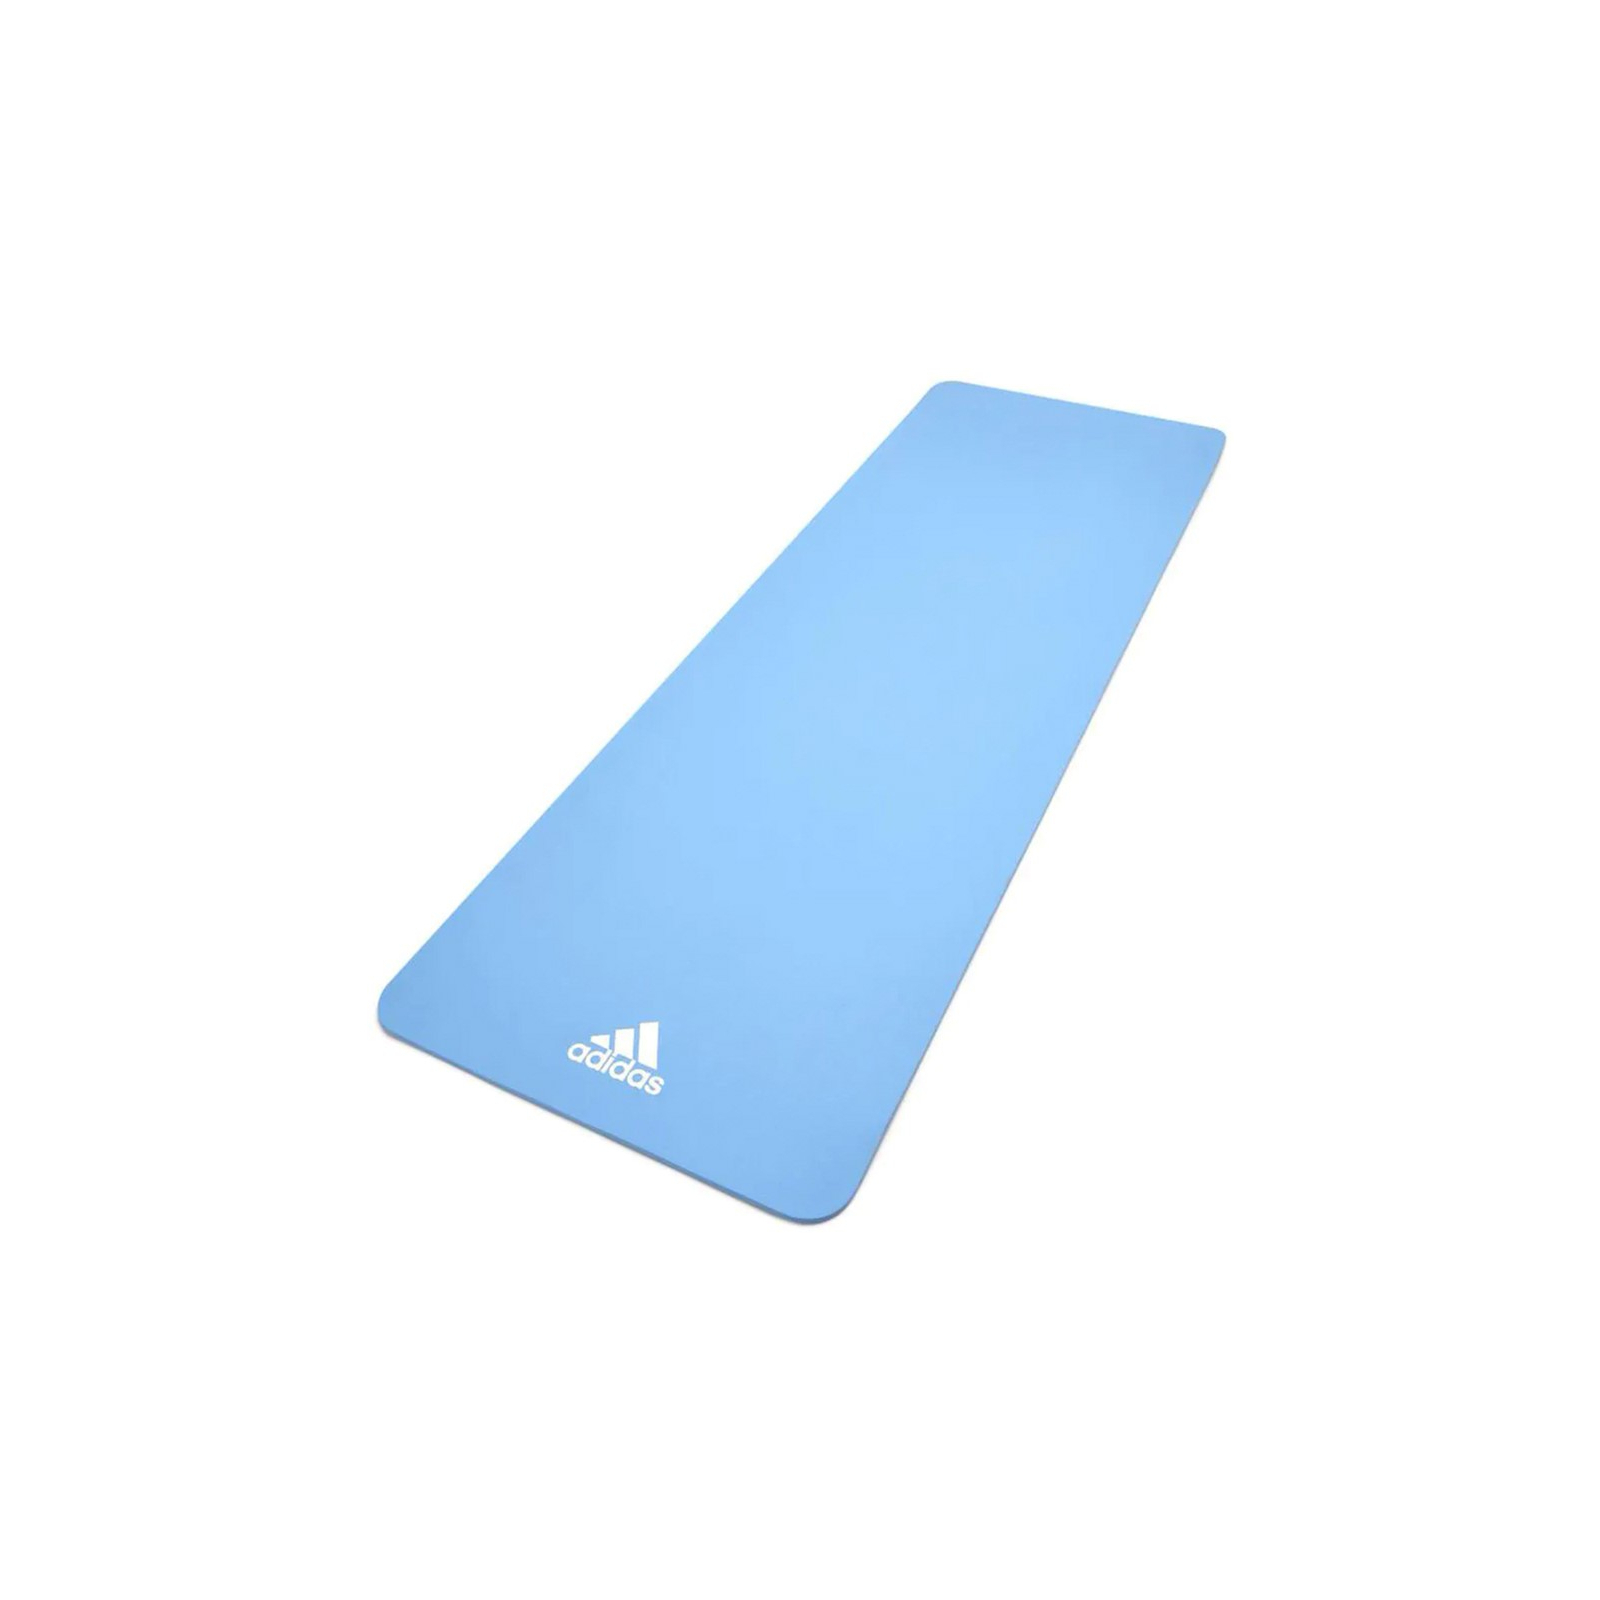 Коврик для йоги Adidas Yoga Mat Уні 176 х 61 х 0,8 см Зелений (ADYG-10100GN)